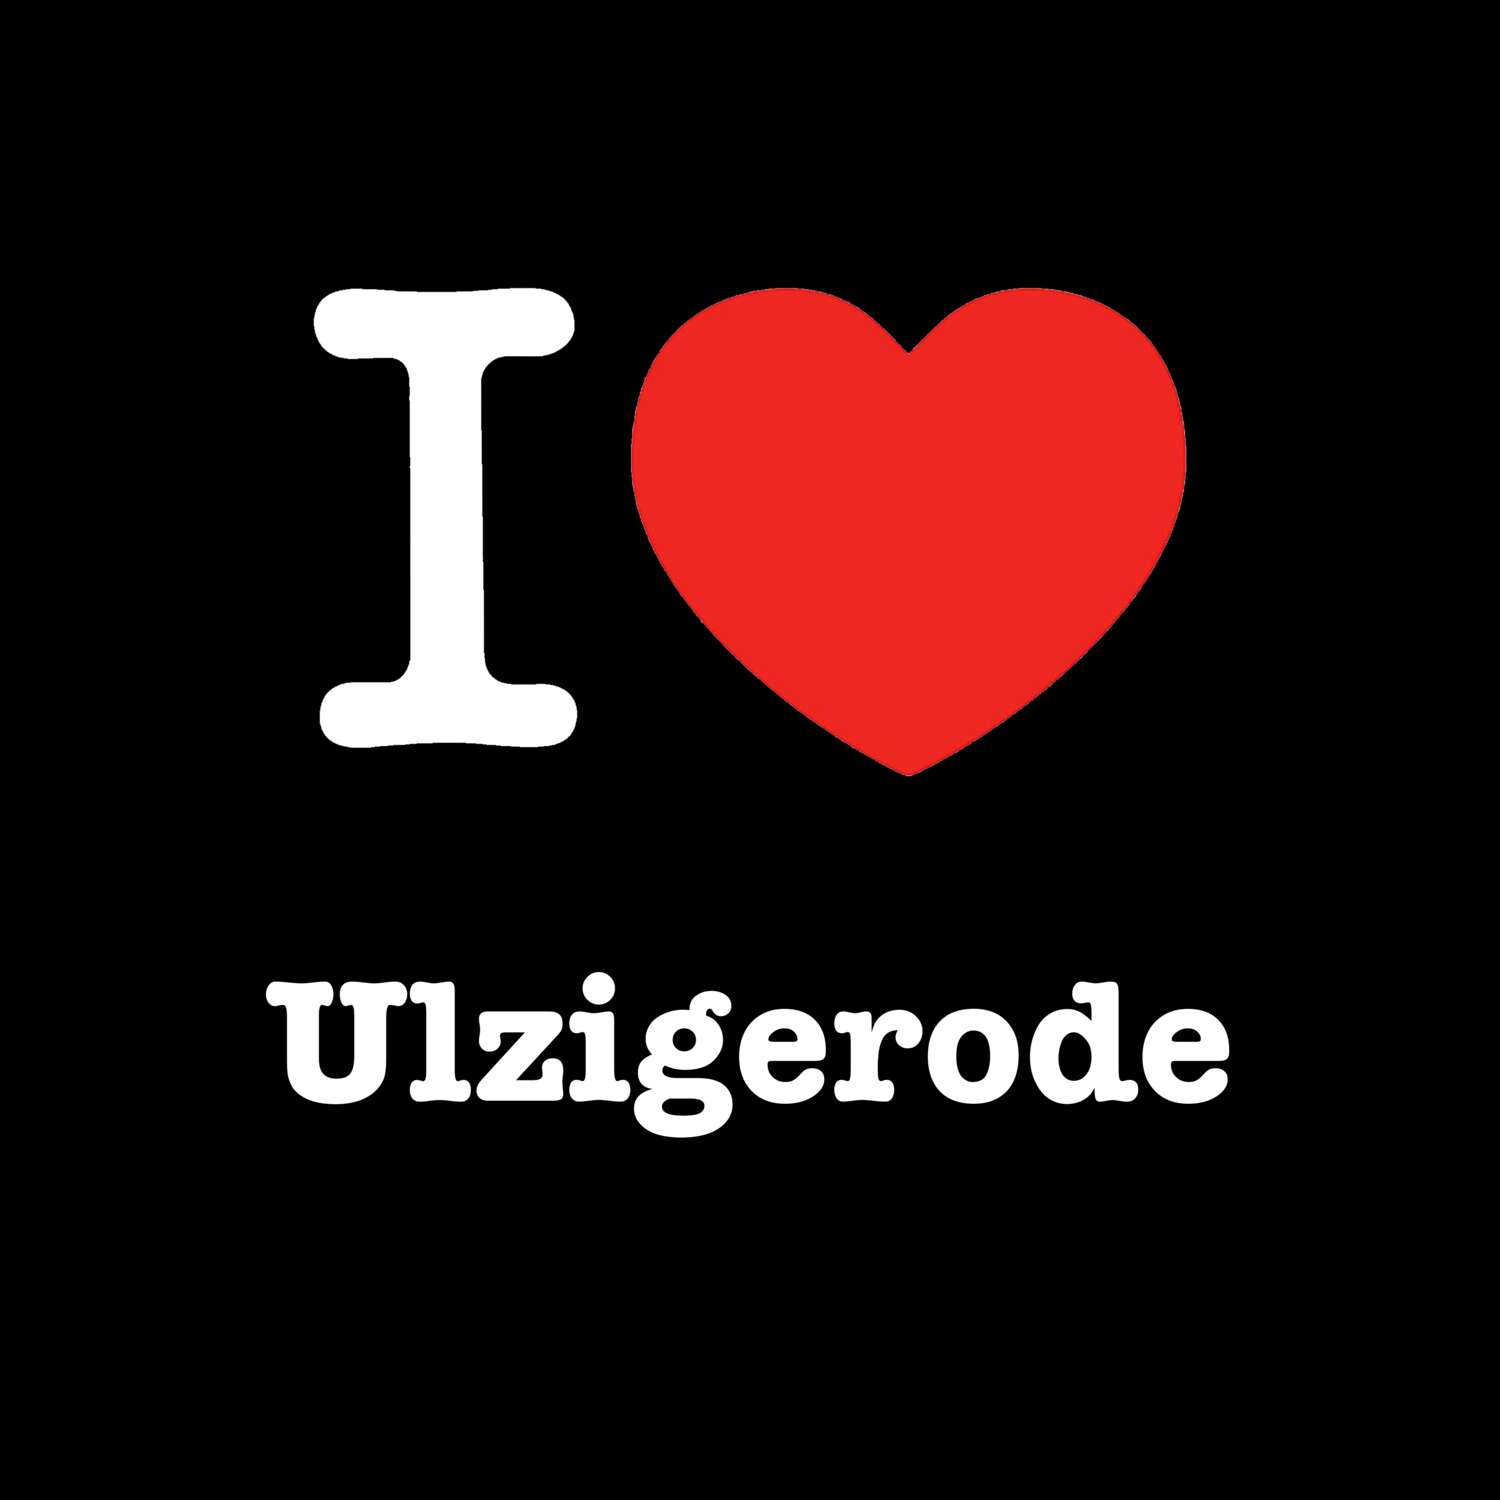 Ulzigerode T-Shirt »I love«